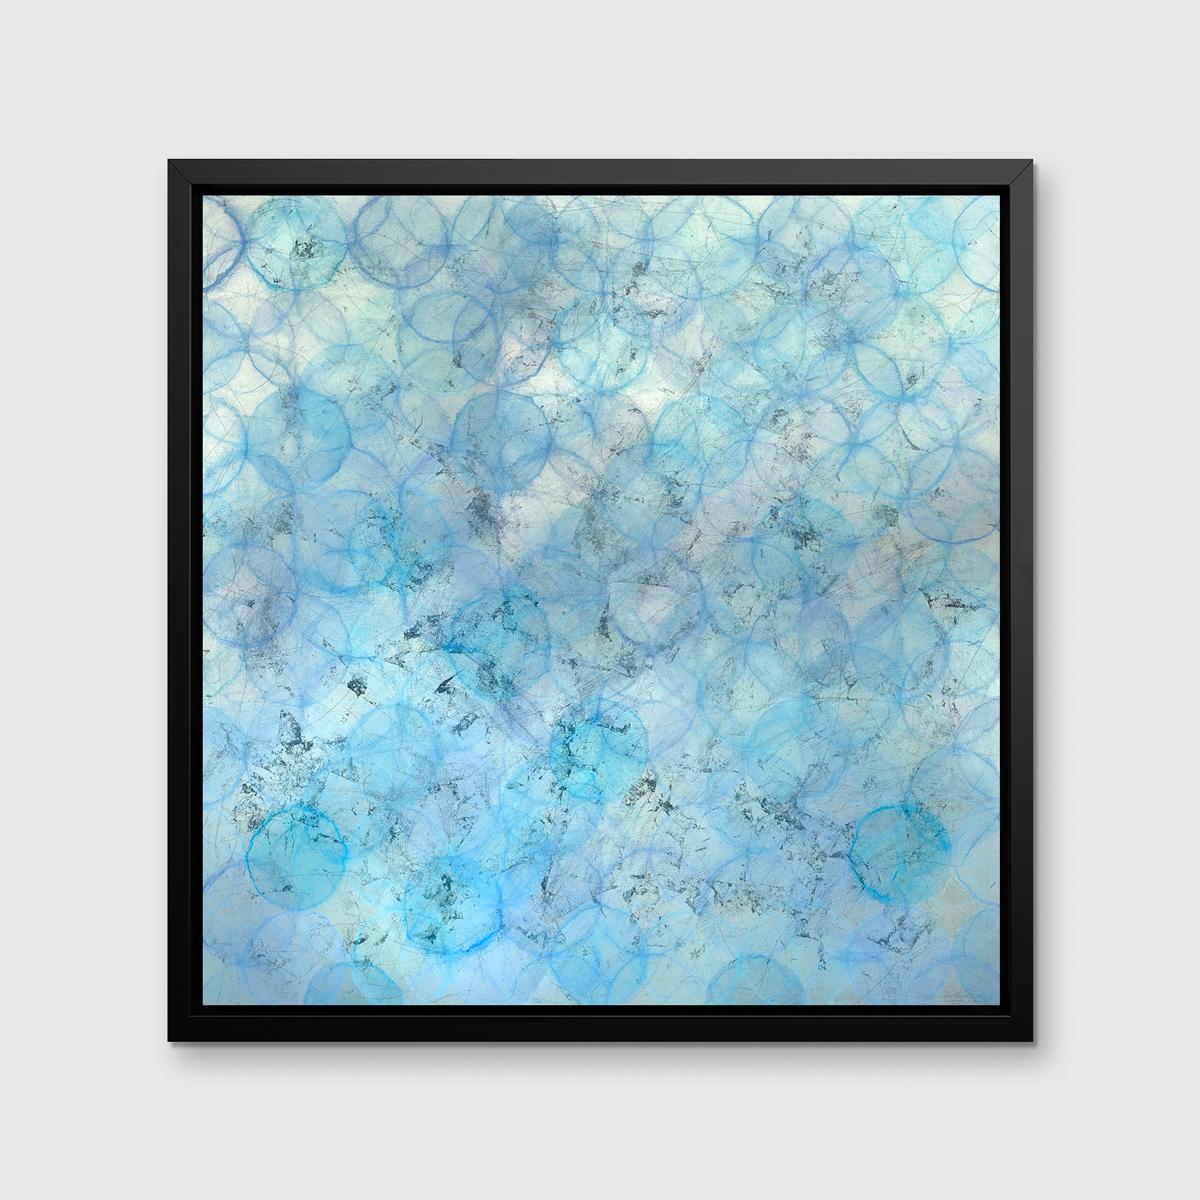 Dieser abstrakte Druck in limitierter Auflage von Roger Mudre zeigt eine hellblaue und silberne Farbpalette mit warmen, subtilen Lavendelfarben, die sich durch das Bild ziehen. Helle, umrissene Kreisformen sind übereinander geschichtet und reichen